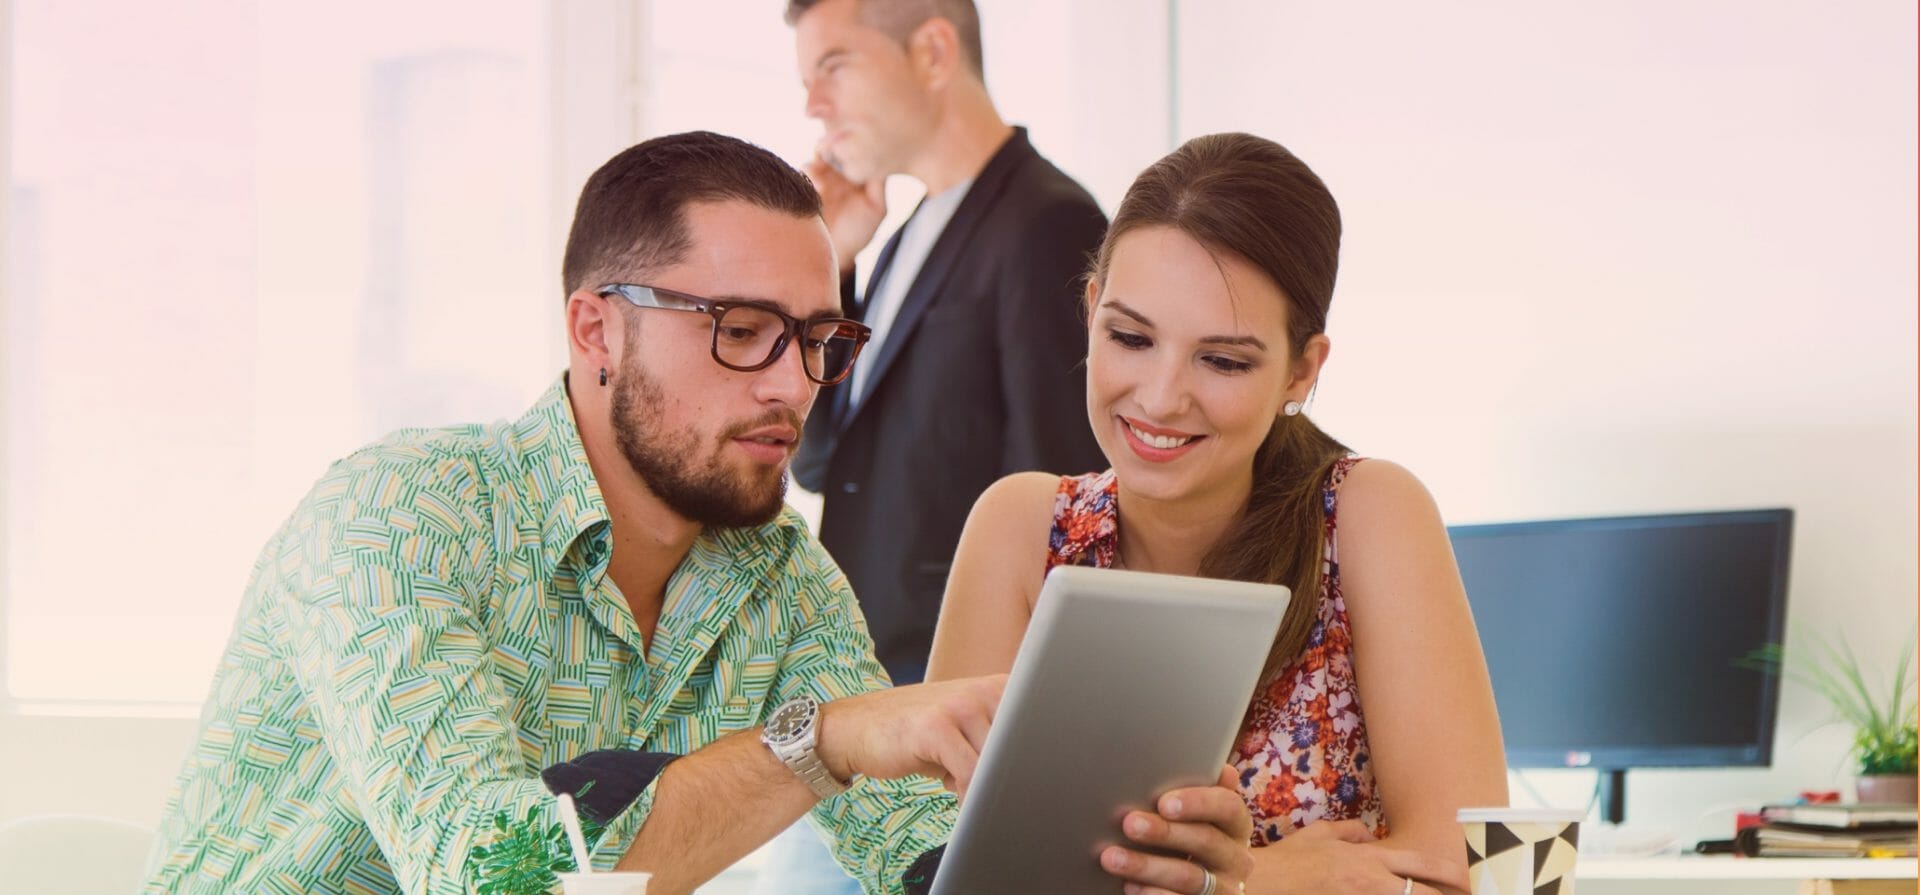 Un hombre y una mujer comparten conocimientos mientras miran una tableta en una oficina.